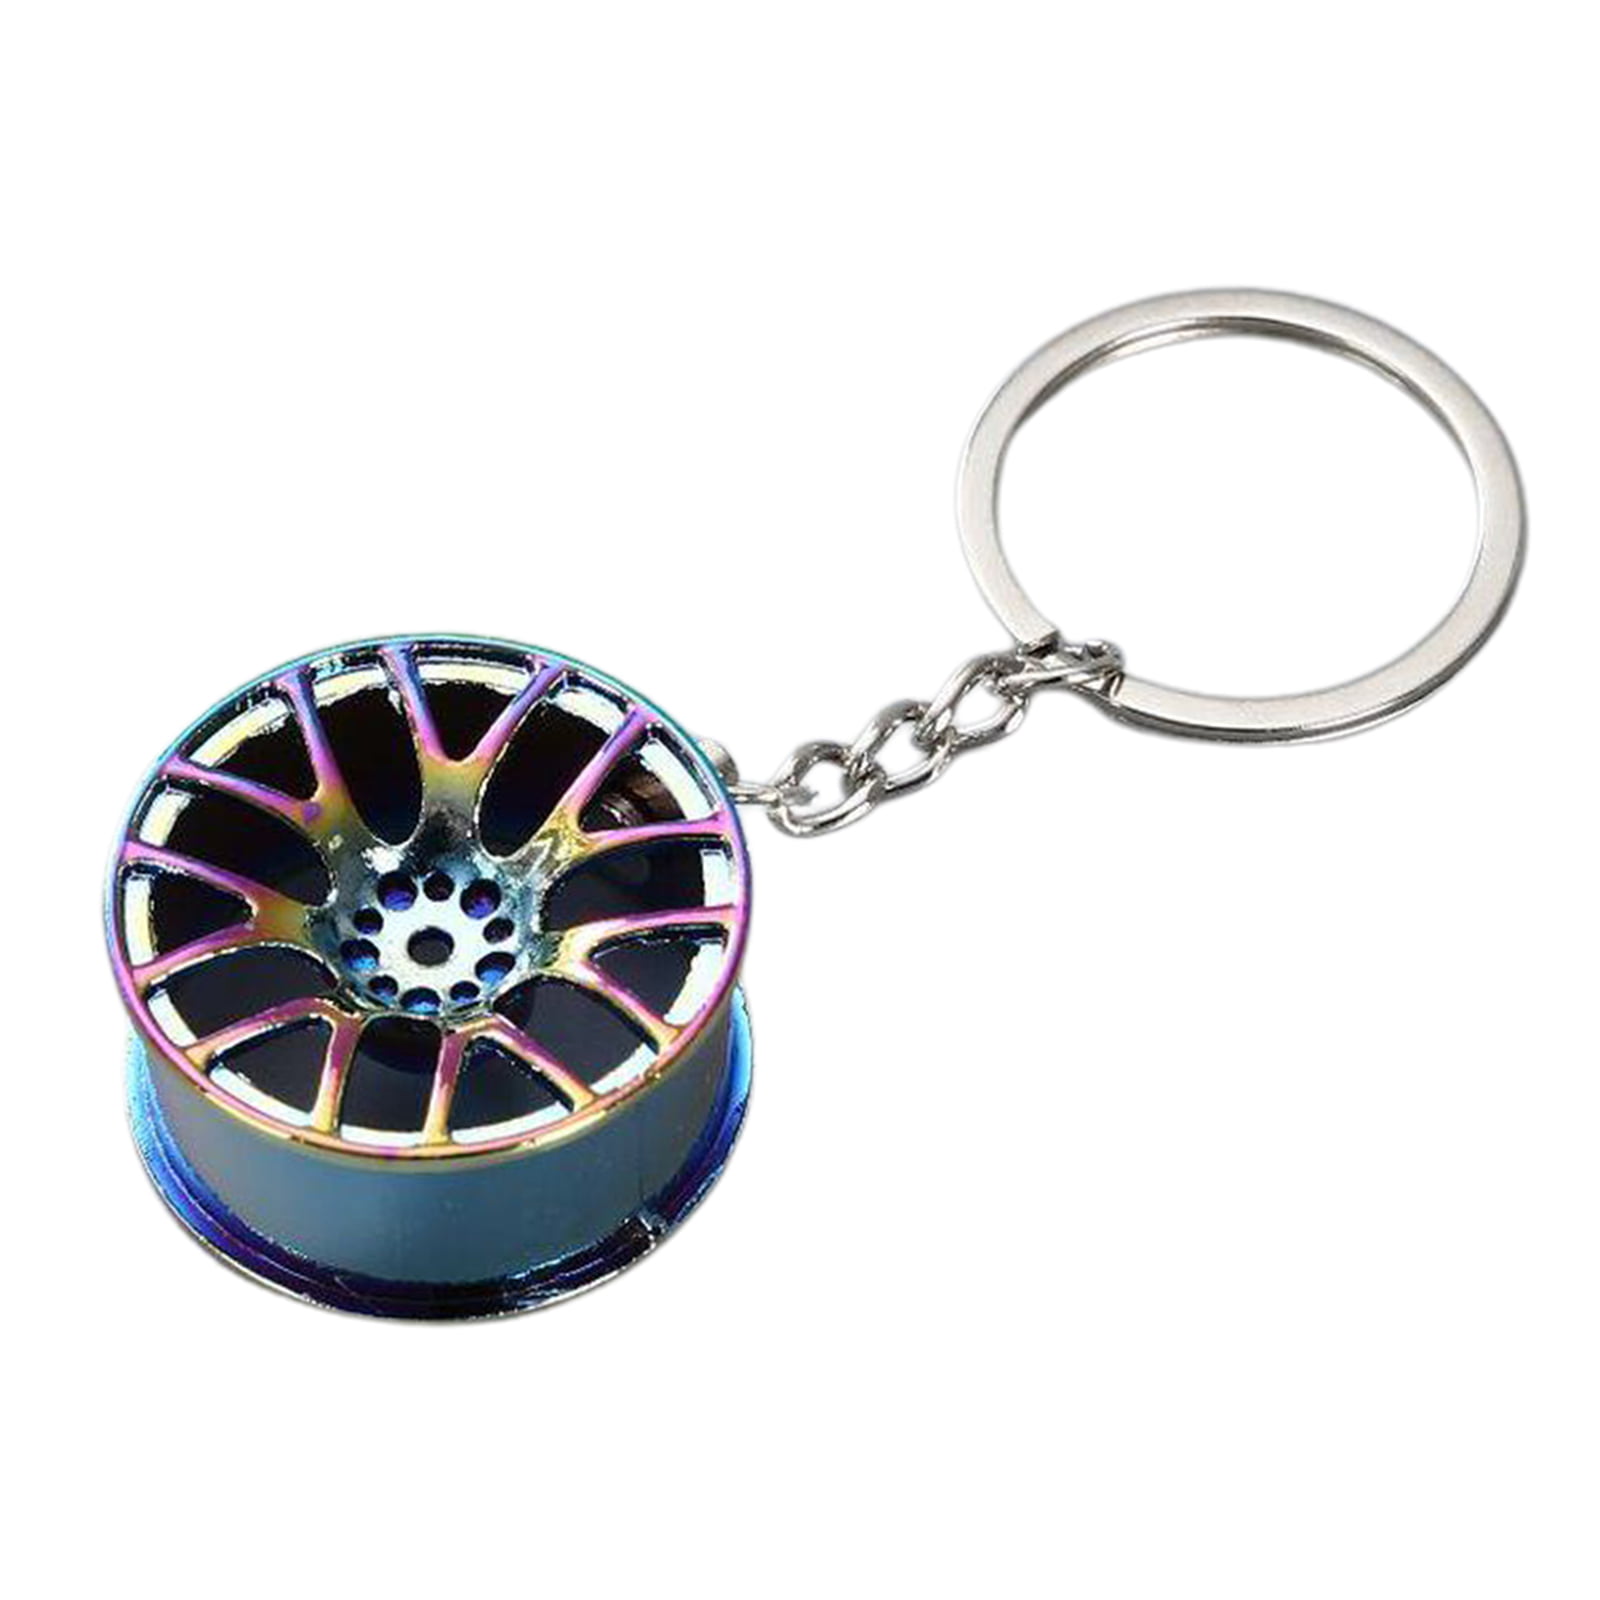 1x Fashion Cool Alloy Metal Keyfob Car Keyring Keychain Key Chain Ring Gifts 